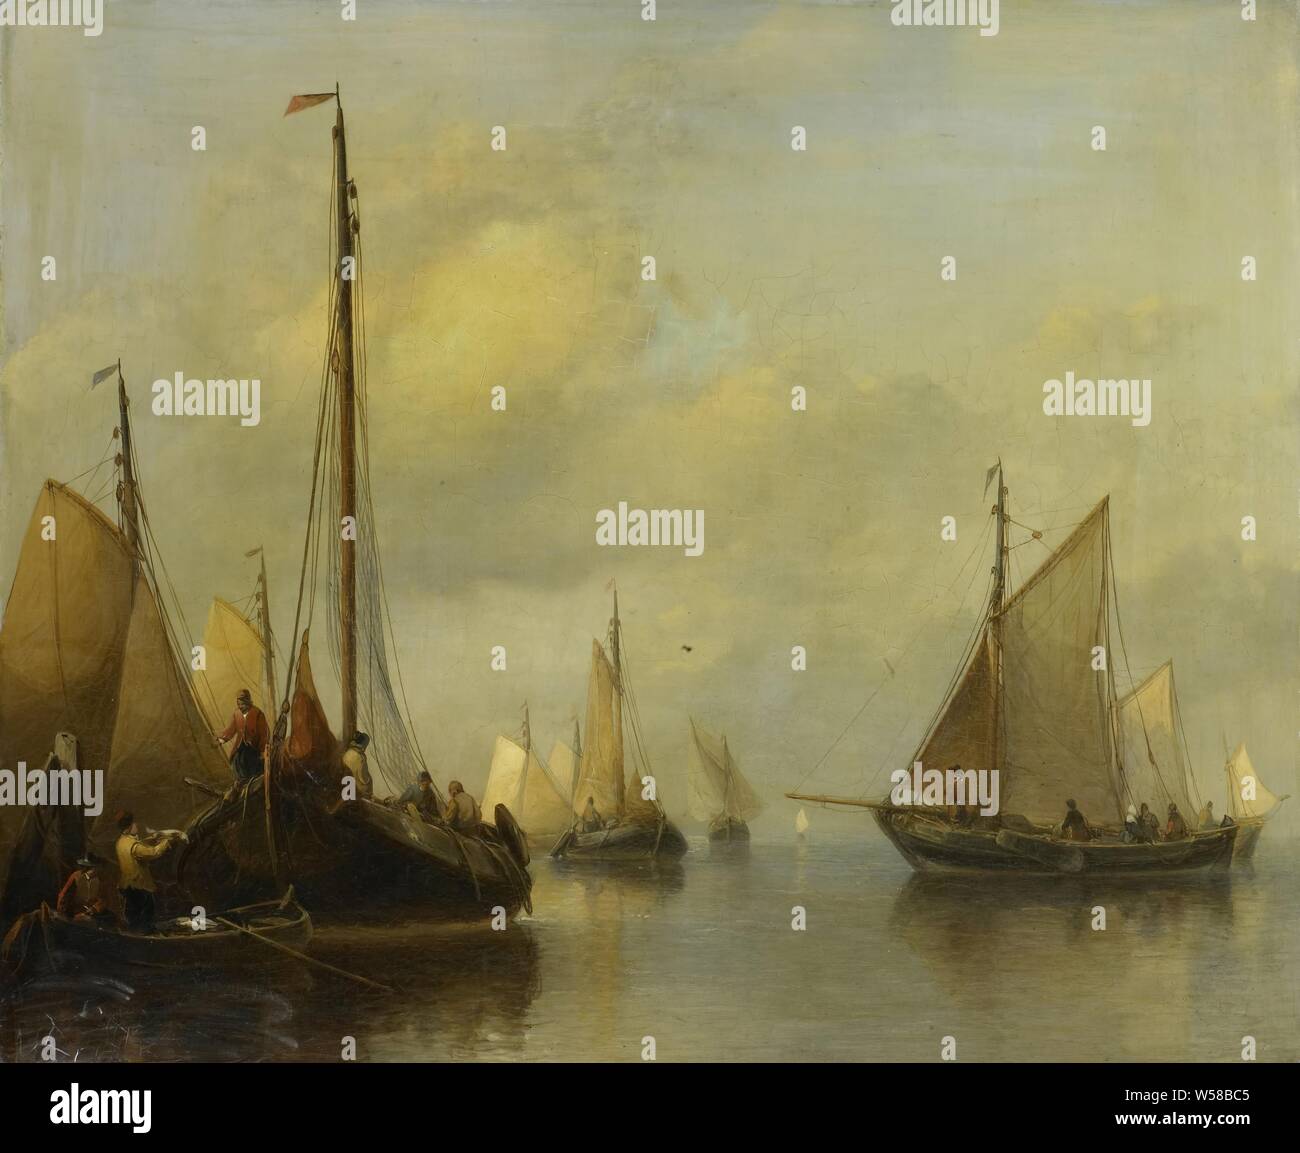 Barche da pesca in acque calme in corrispondenza di un pontile sulla sinistra, un pescatore mantiene un pesce in una barca a remi., Antonie Waldorp, 1840 - 1850, pannello, pittura a olio (vernice), h 48,5 cm × W 60 cm d 7 cm Foto Stock